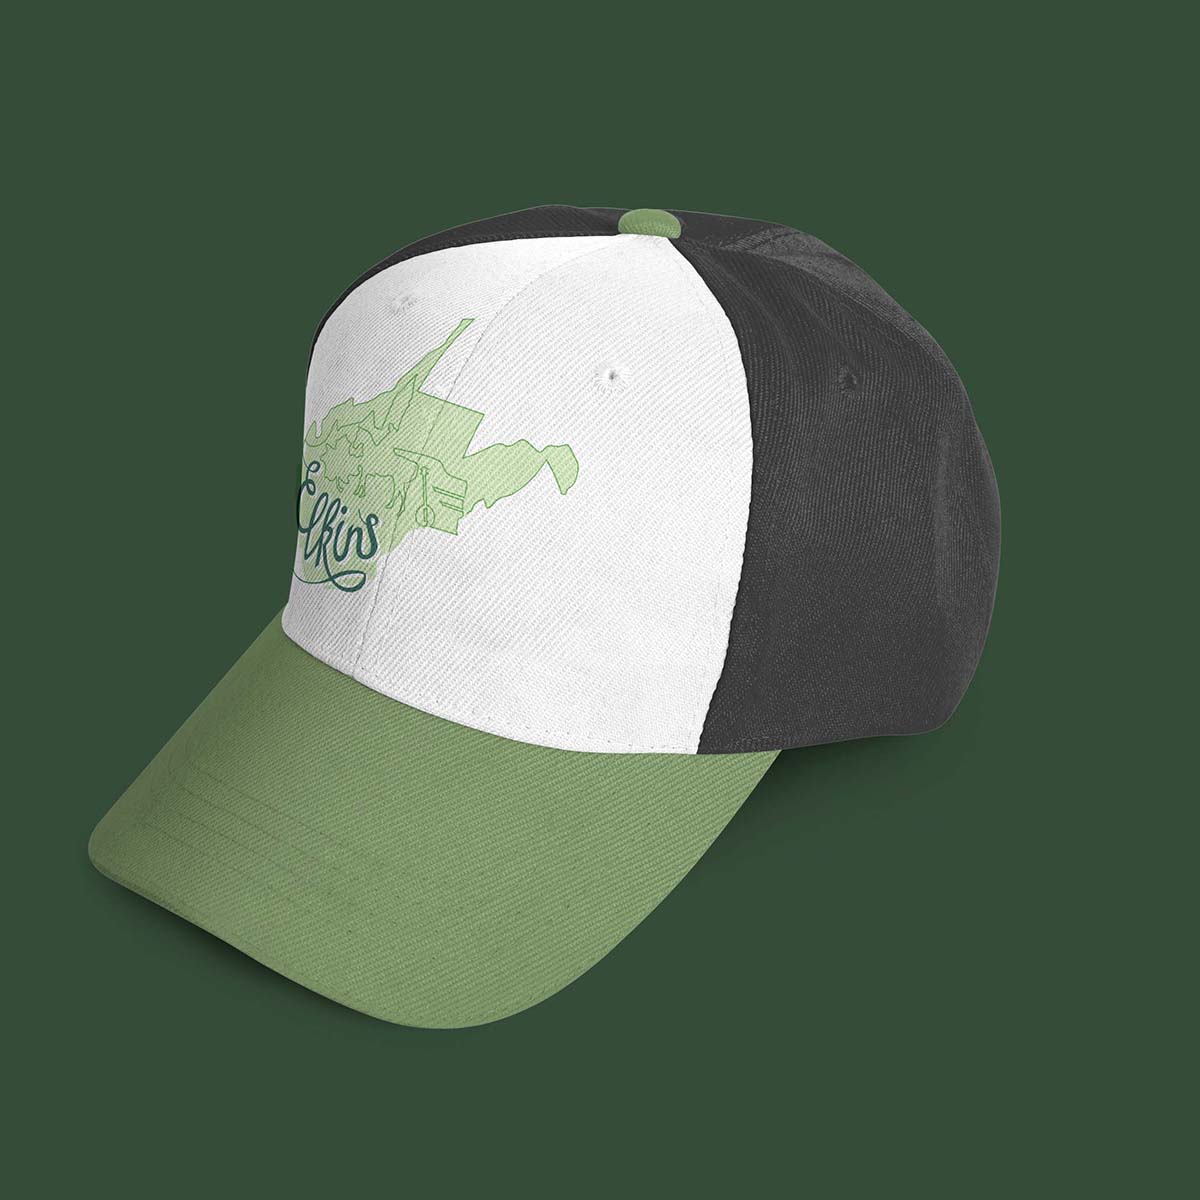 Downtown Elkins logo hat